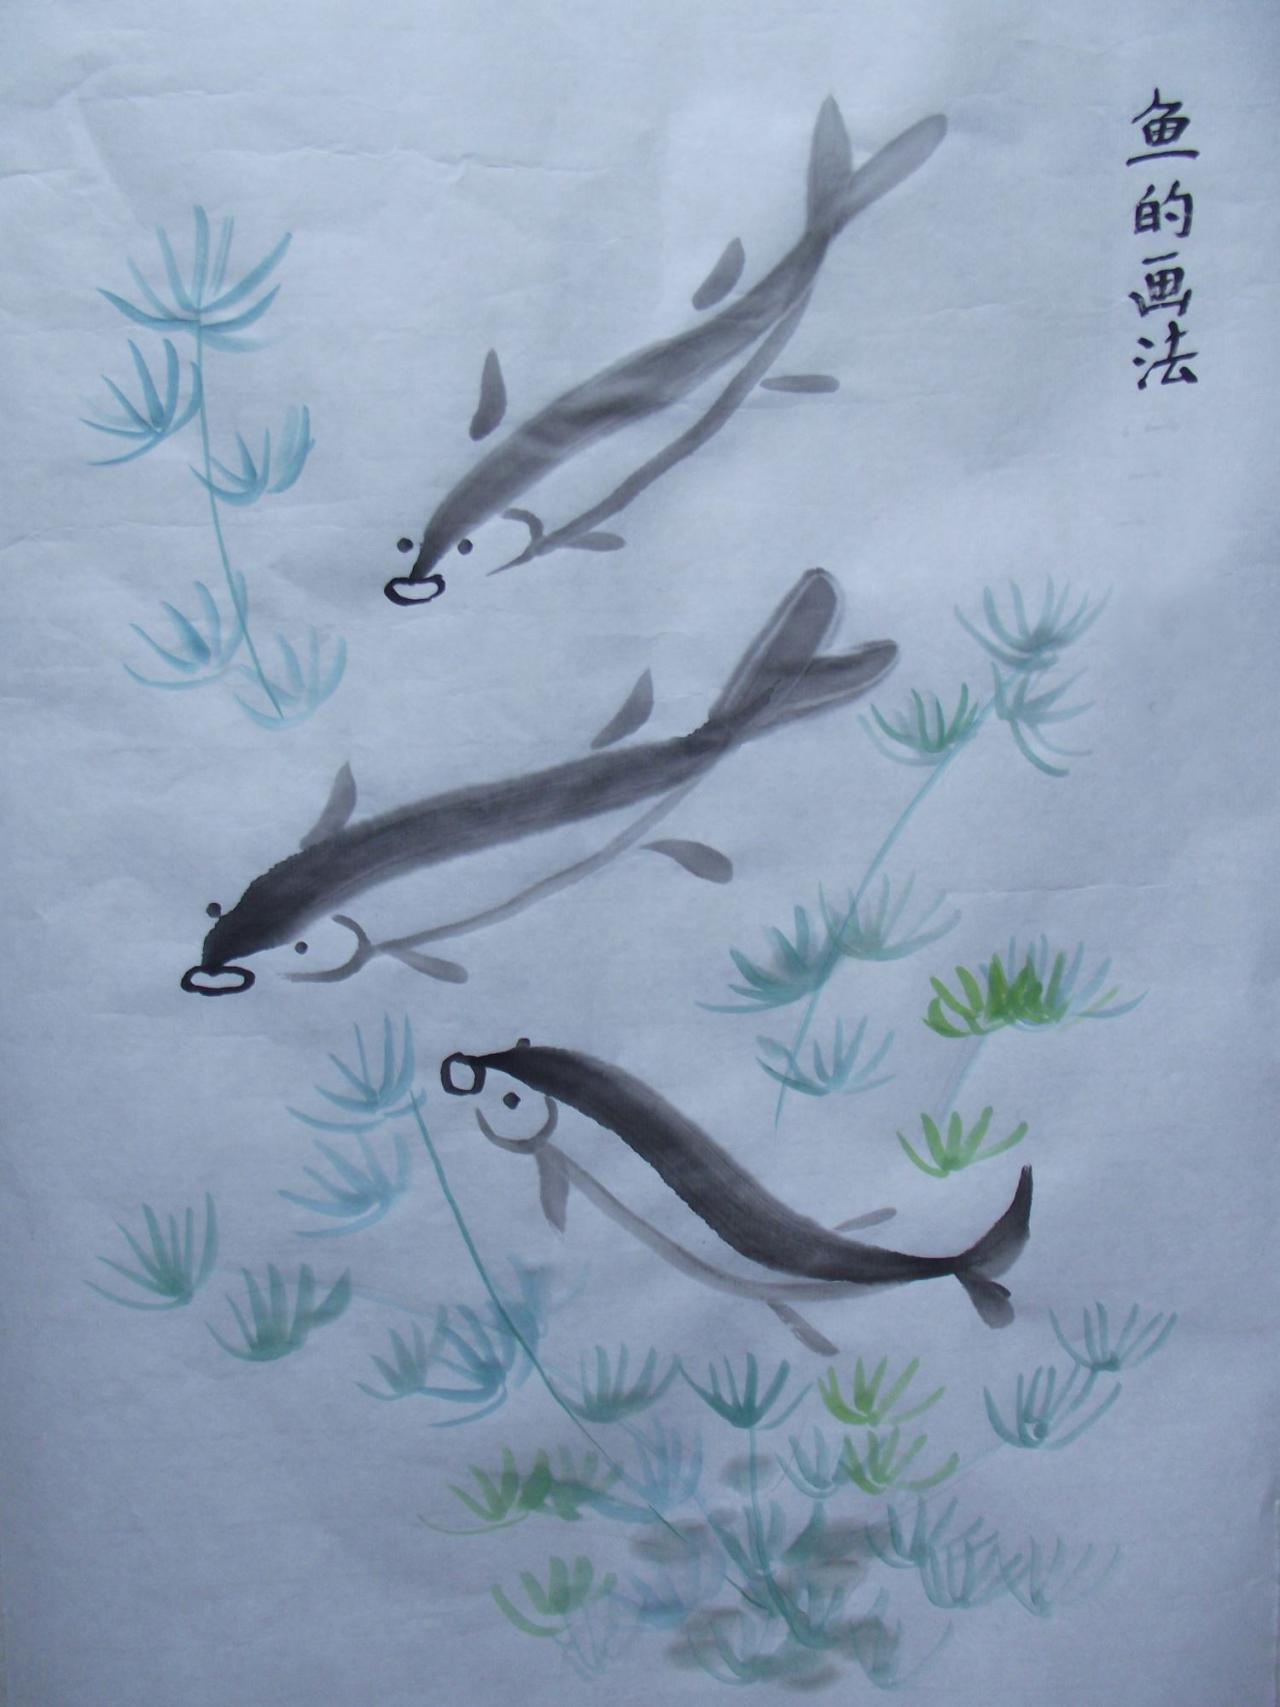 少儿学国画系列教程之家鱼的画法完成稿